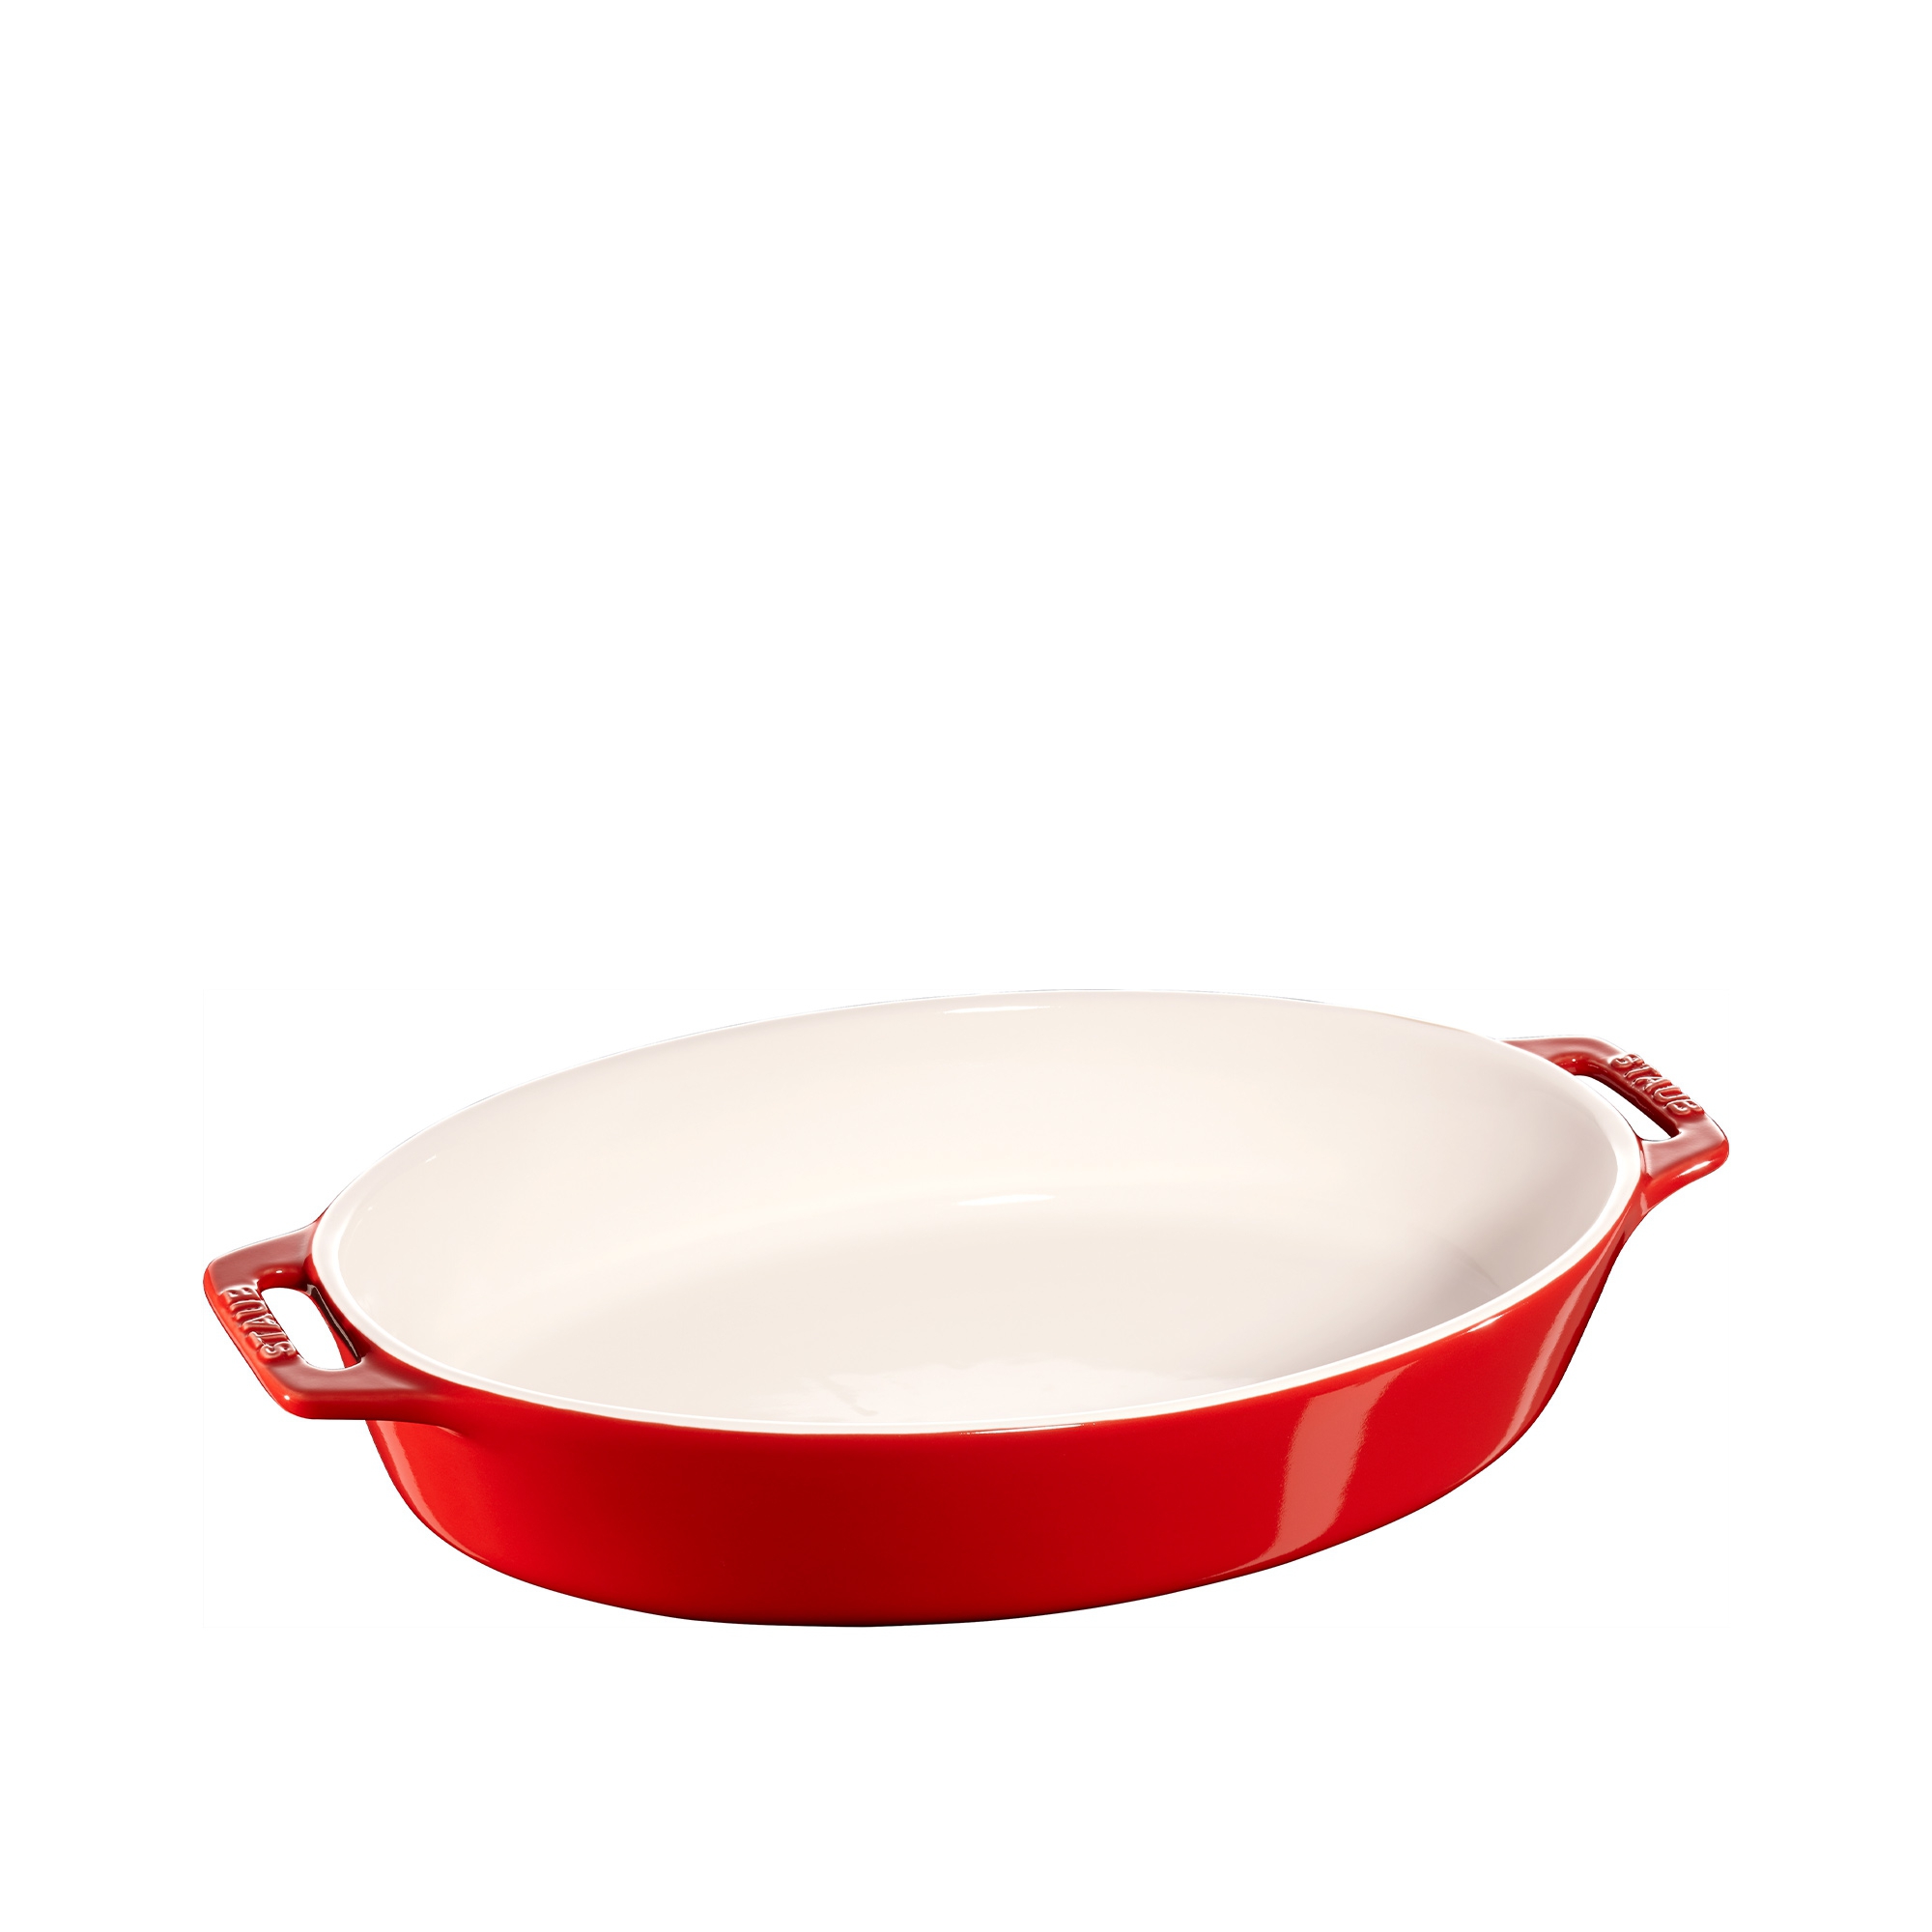 Staub - Ceramique baking dish - oval - 30 cm